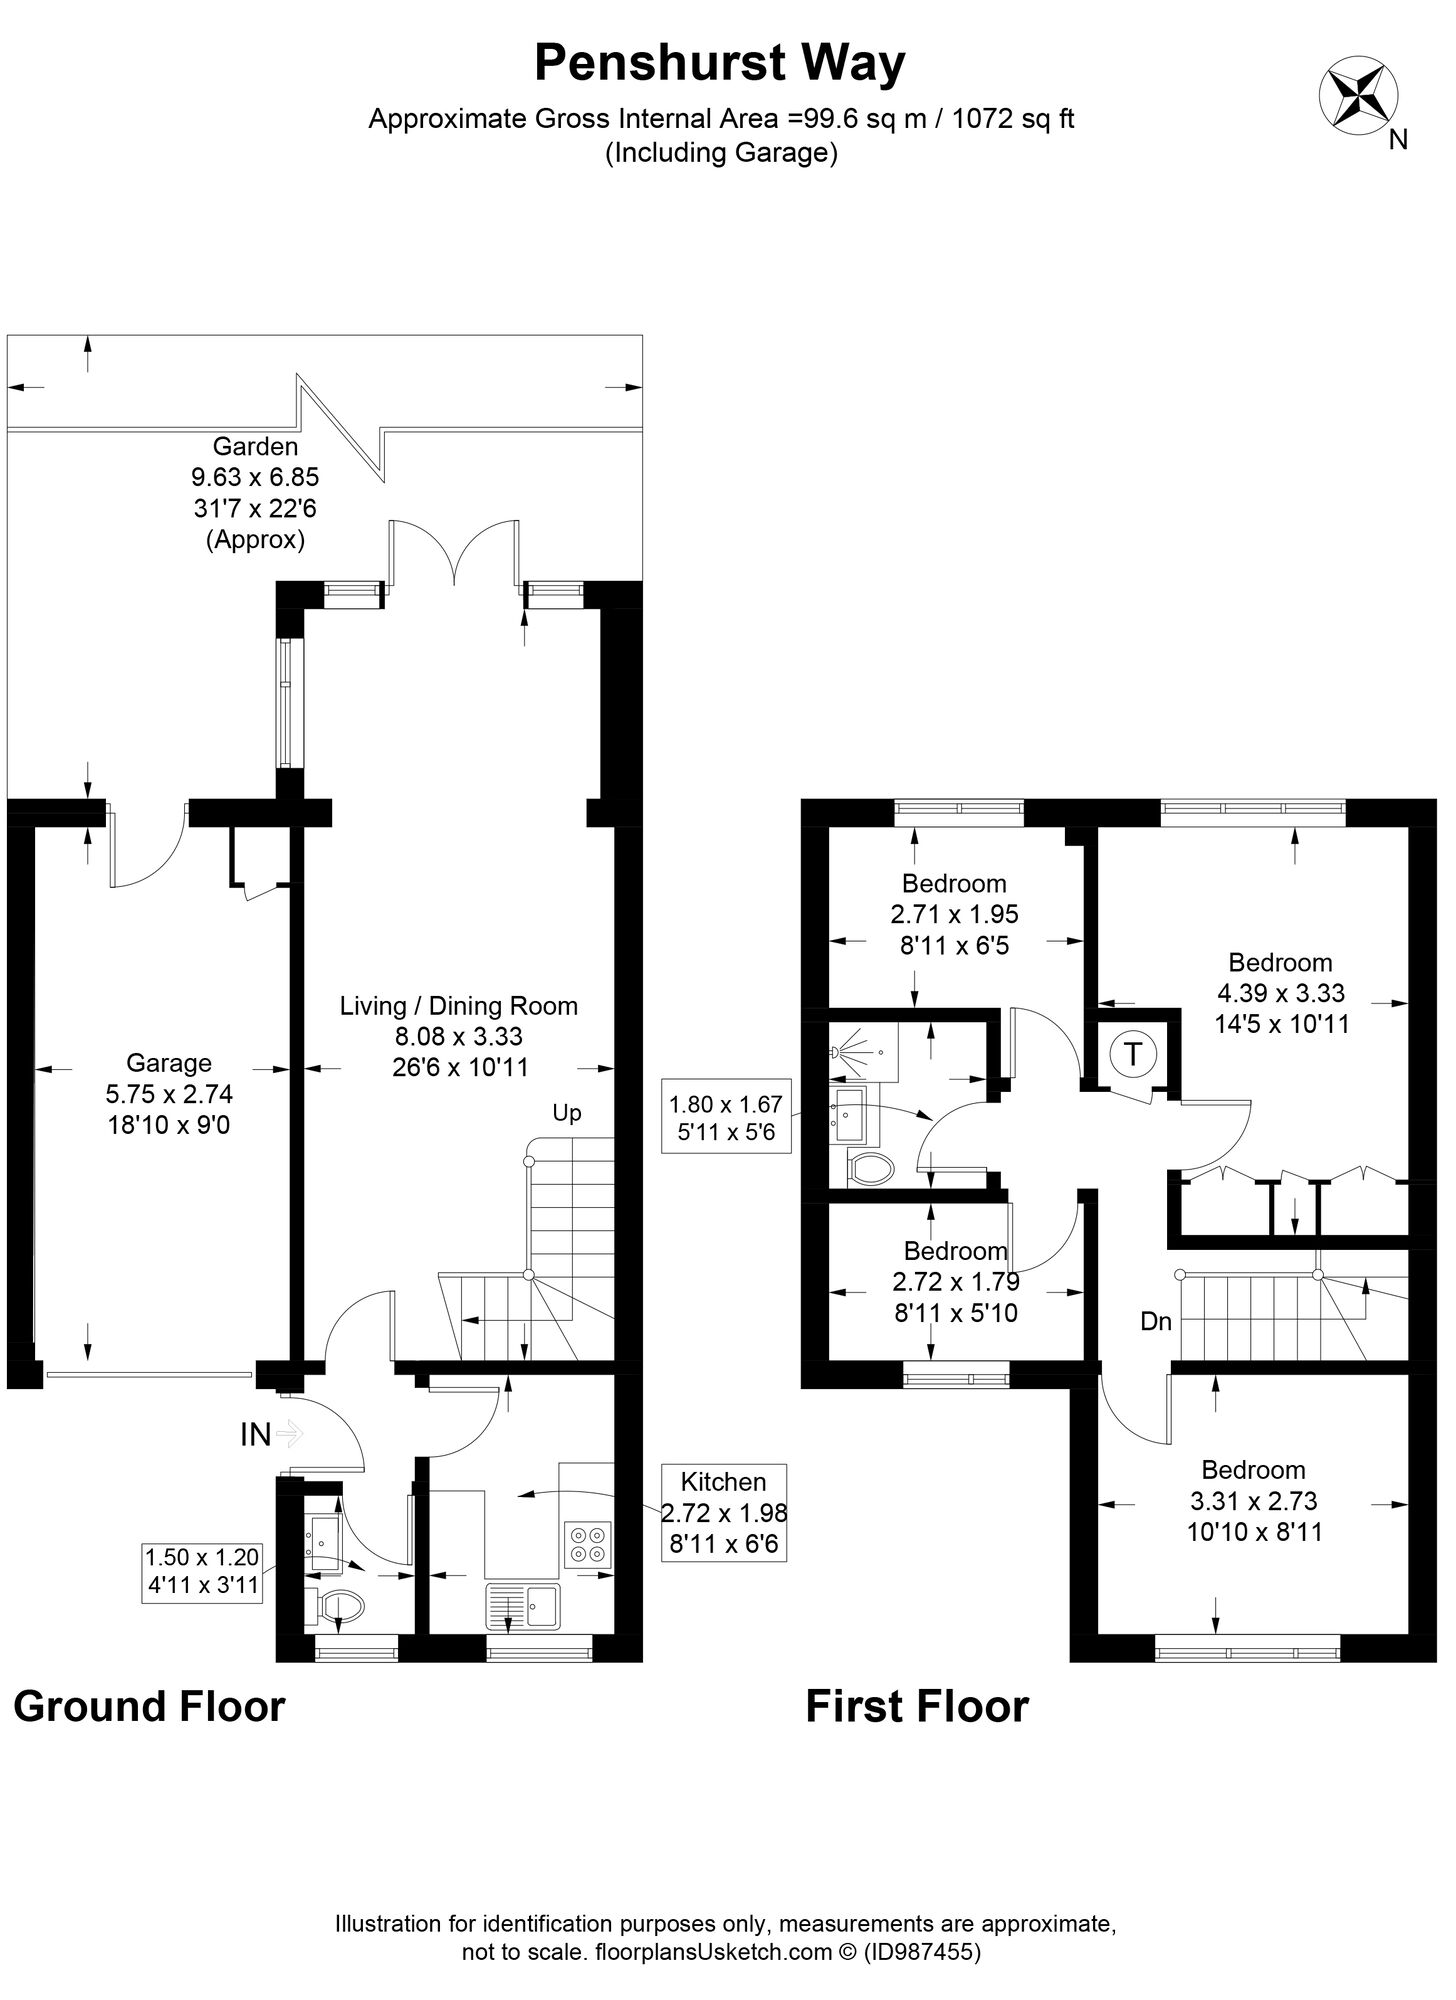 Floor plans